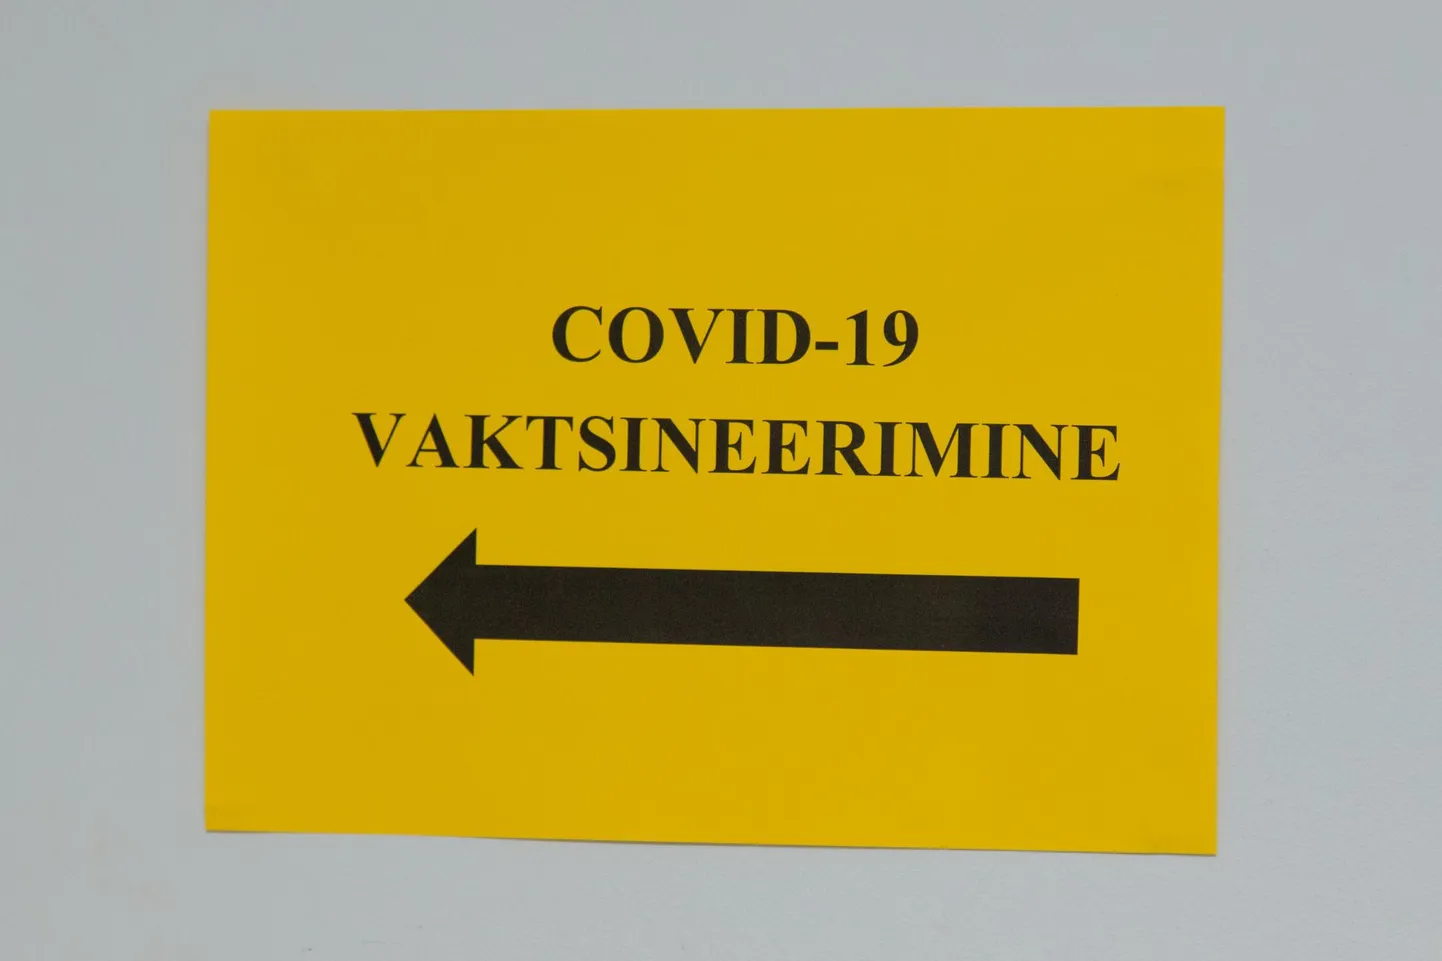 Valitsus kiitis heaks üle-eestilised COVID-19 tõrje piirangud ja see tähendab, et kolmapäevast kehtivad kõigis Eesti maakondades uued piirangud.